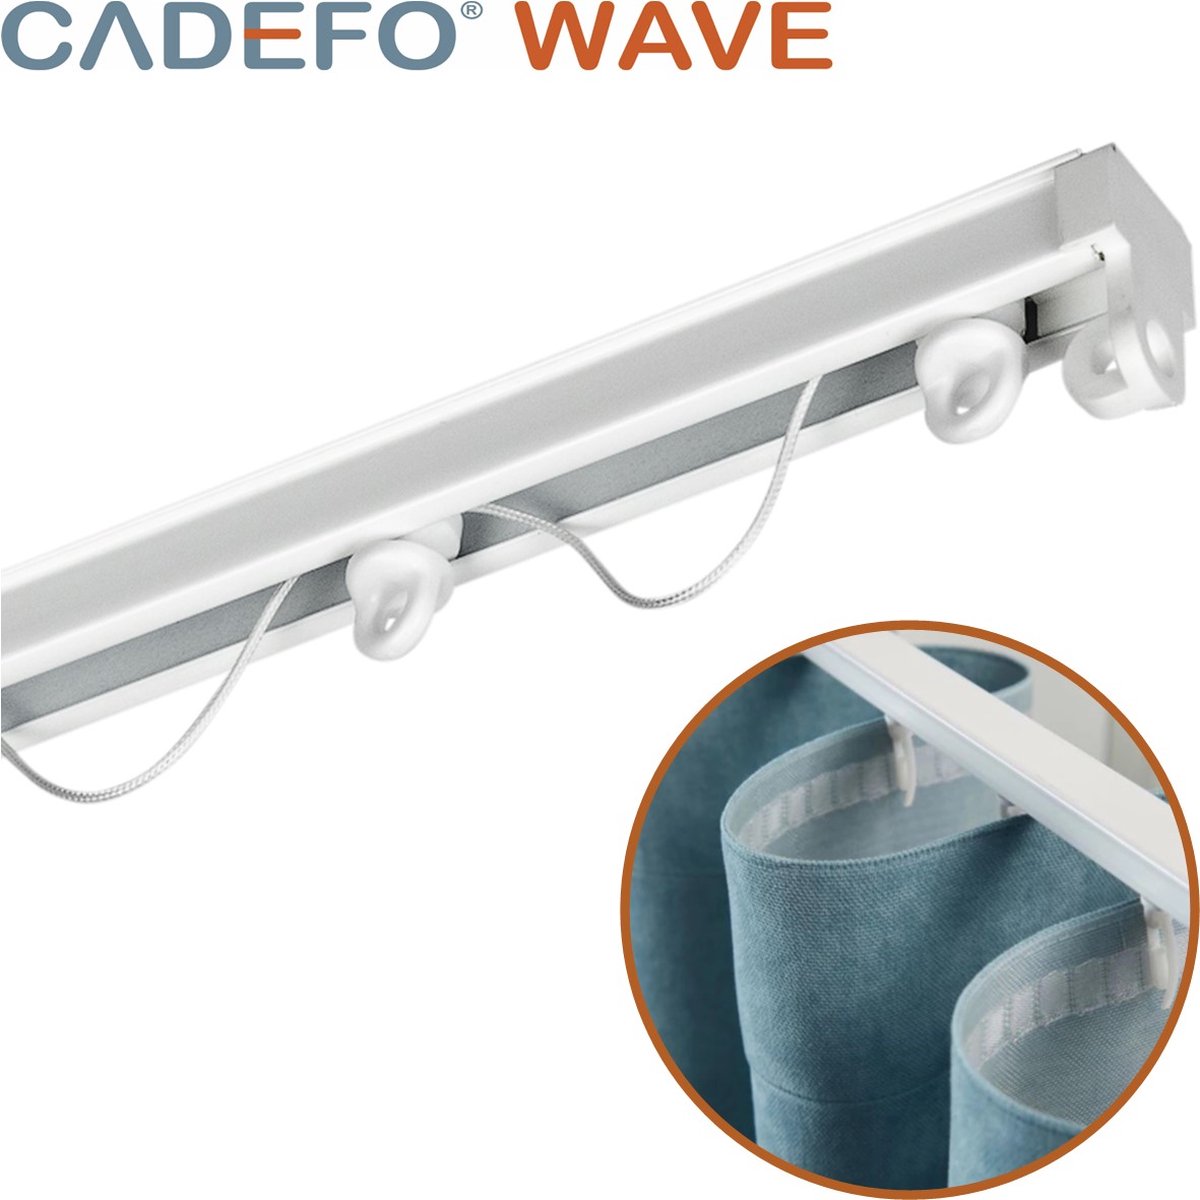 CADEFO WAVE (401 - 450 cm) Gordijnrails - Compleet op maat! - UIT 1 STUK - Leverbaar tot 6 meter - Plafondbevestiging - Lengte 415 cm